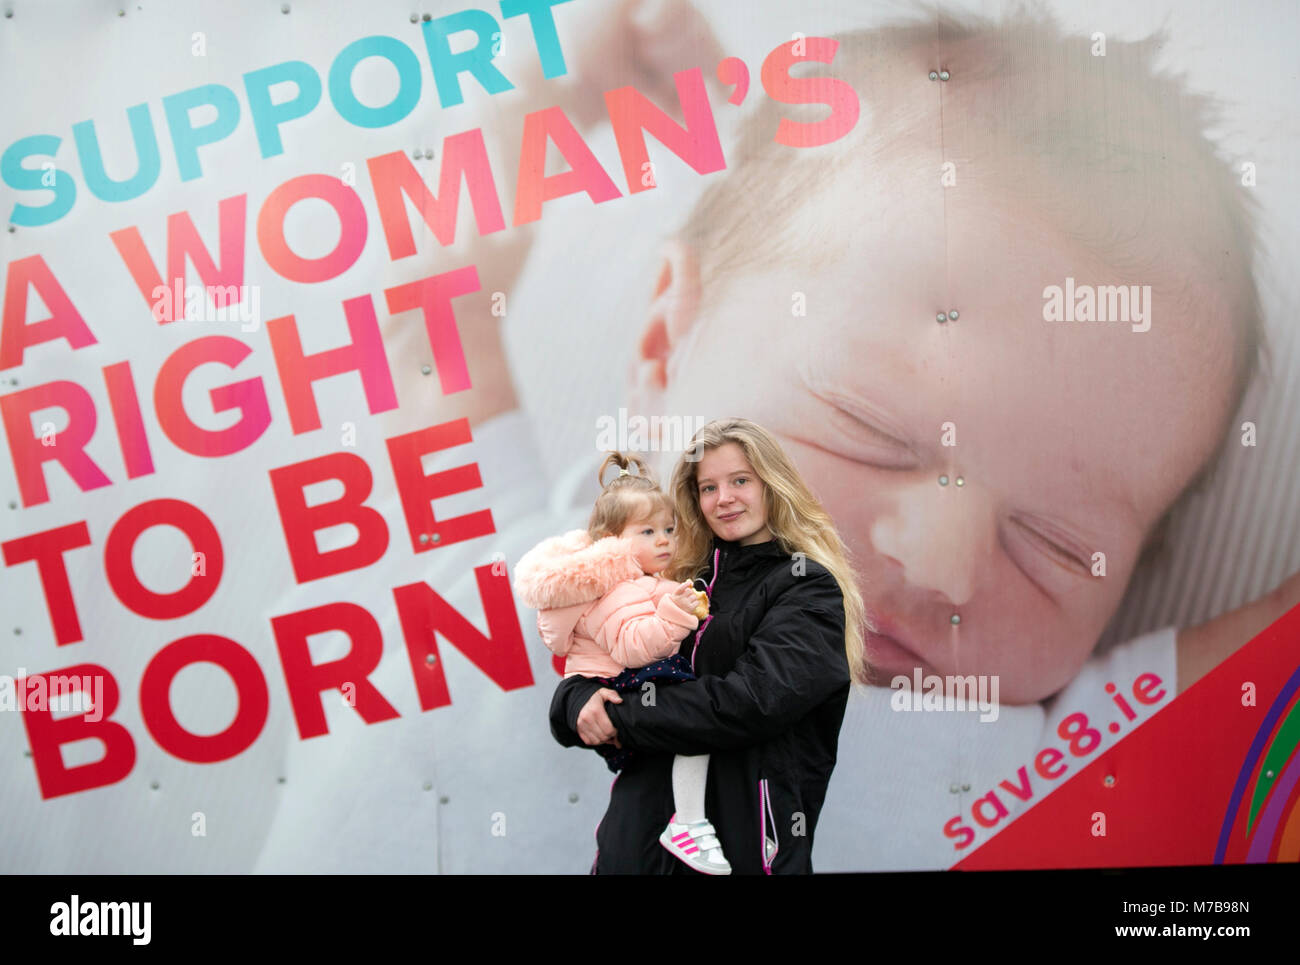 Dublín, Irlanda. 10 Mar, 2018. Rally anti aborto, Dublin, Irlanda. Los activistas pro vida se reúnen en la Plaza Parnell en Dublín hoy, antes de dirigirse a Leinster House (Dail/Parlamento) para una reunión masiva en las calles. Decenas de miles son esperados en el rally, que está en oposición a la propuesta del Gobierno irlandés para celebrar un referéndum para derogar la Octava Enmienda de la Constitución, que prohíbe el aborto y sustituirla con una ley permitiría a las mujeres embarazadas a acceder a servicios de aborto. Foto: Sam/Boal RollingNews.ie Crédito: RollingNews.ie/Alamy Live News Foto de stock